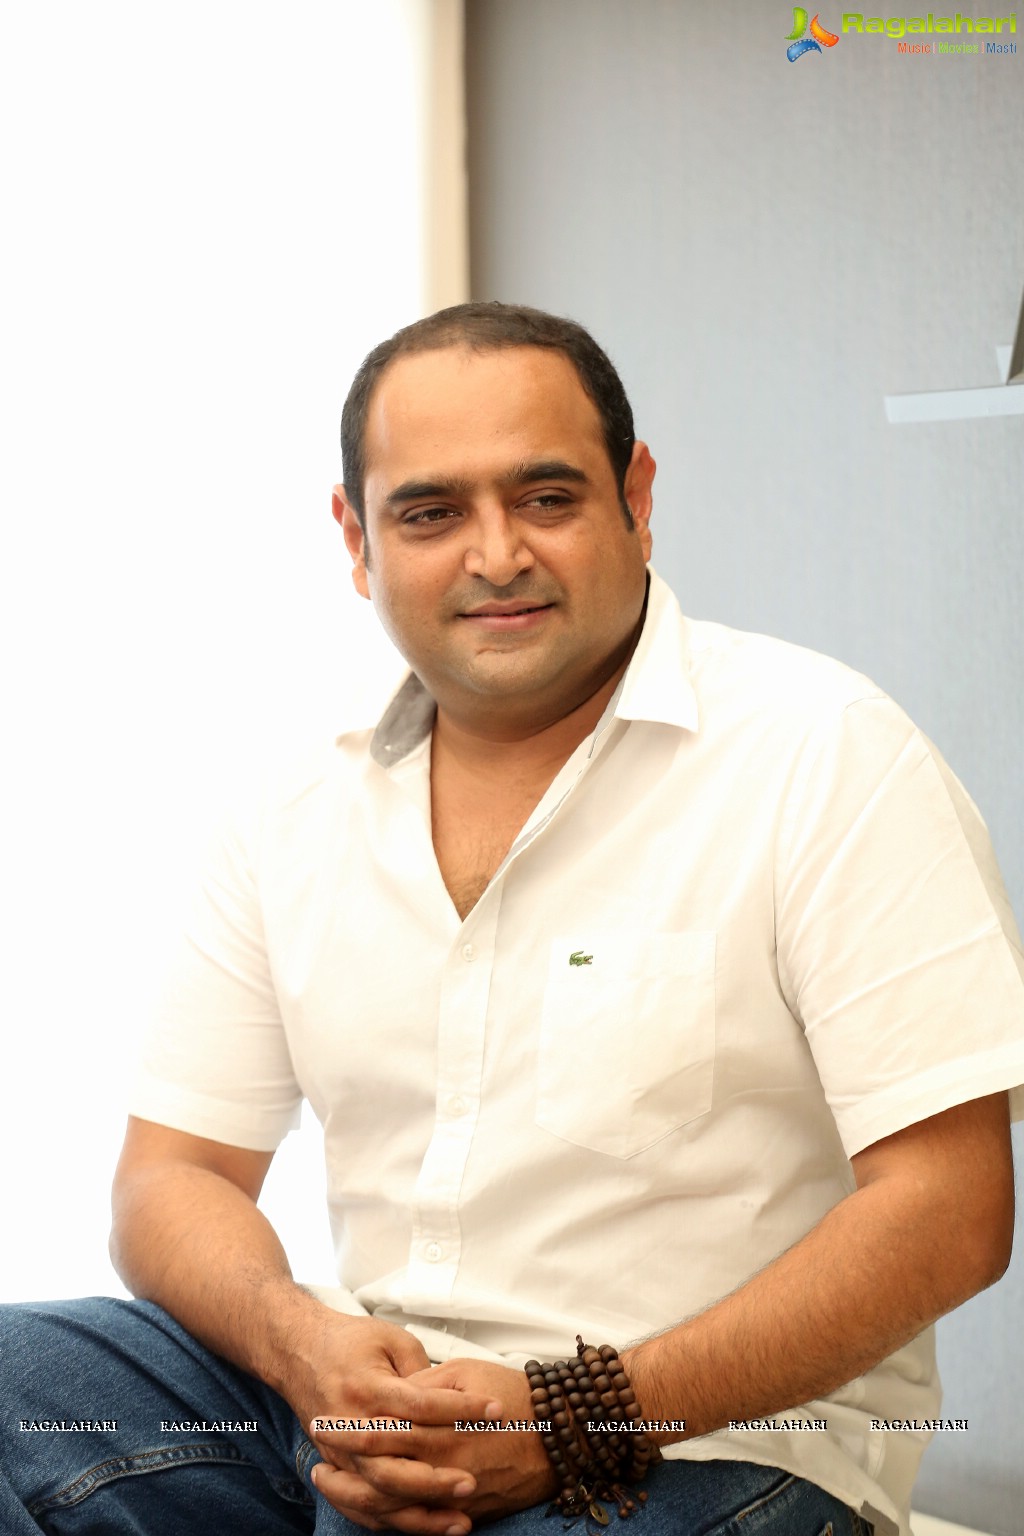 Vikram K Kumar